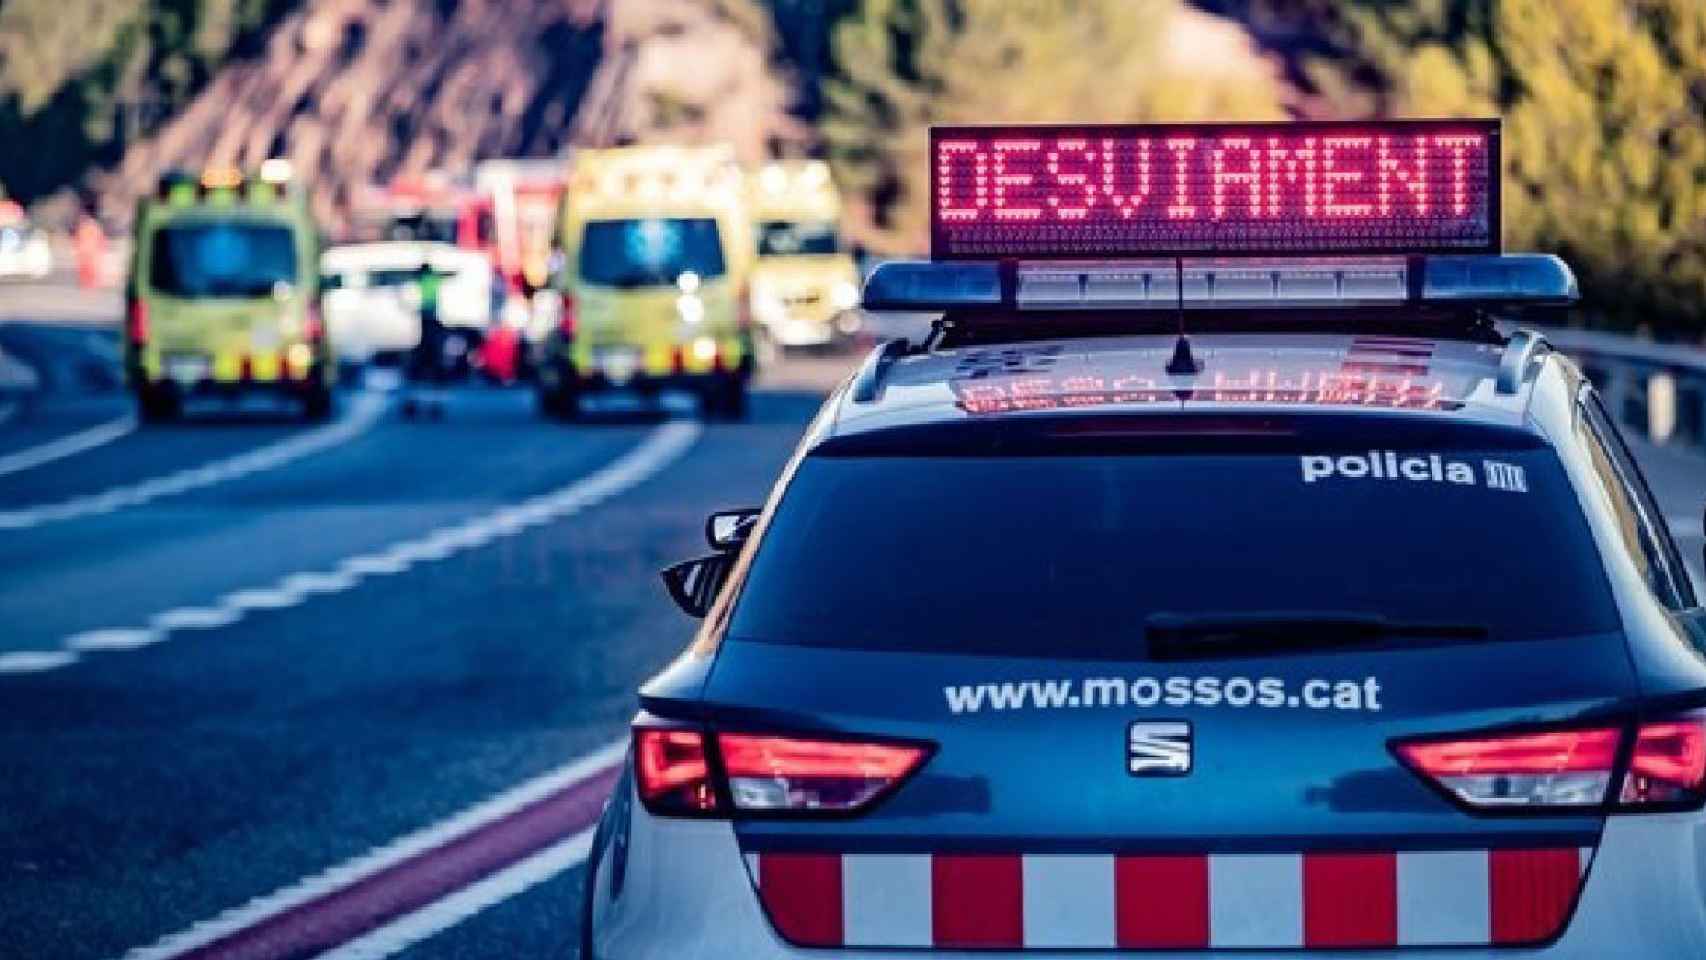 Los Mossos d'Esquadra señalizando un desvío por accidente, como el ocurrido este miércoles en Mediona donde el conductor de una furgoneta ha perdido la vida al chocar con otro vehículo  / MOSSOS